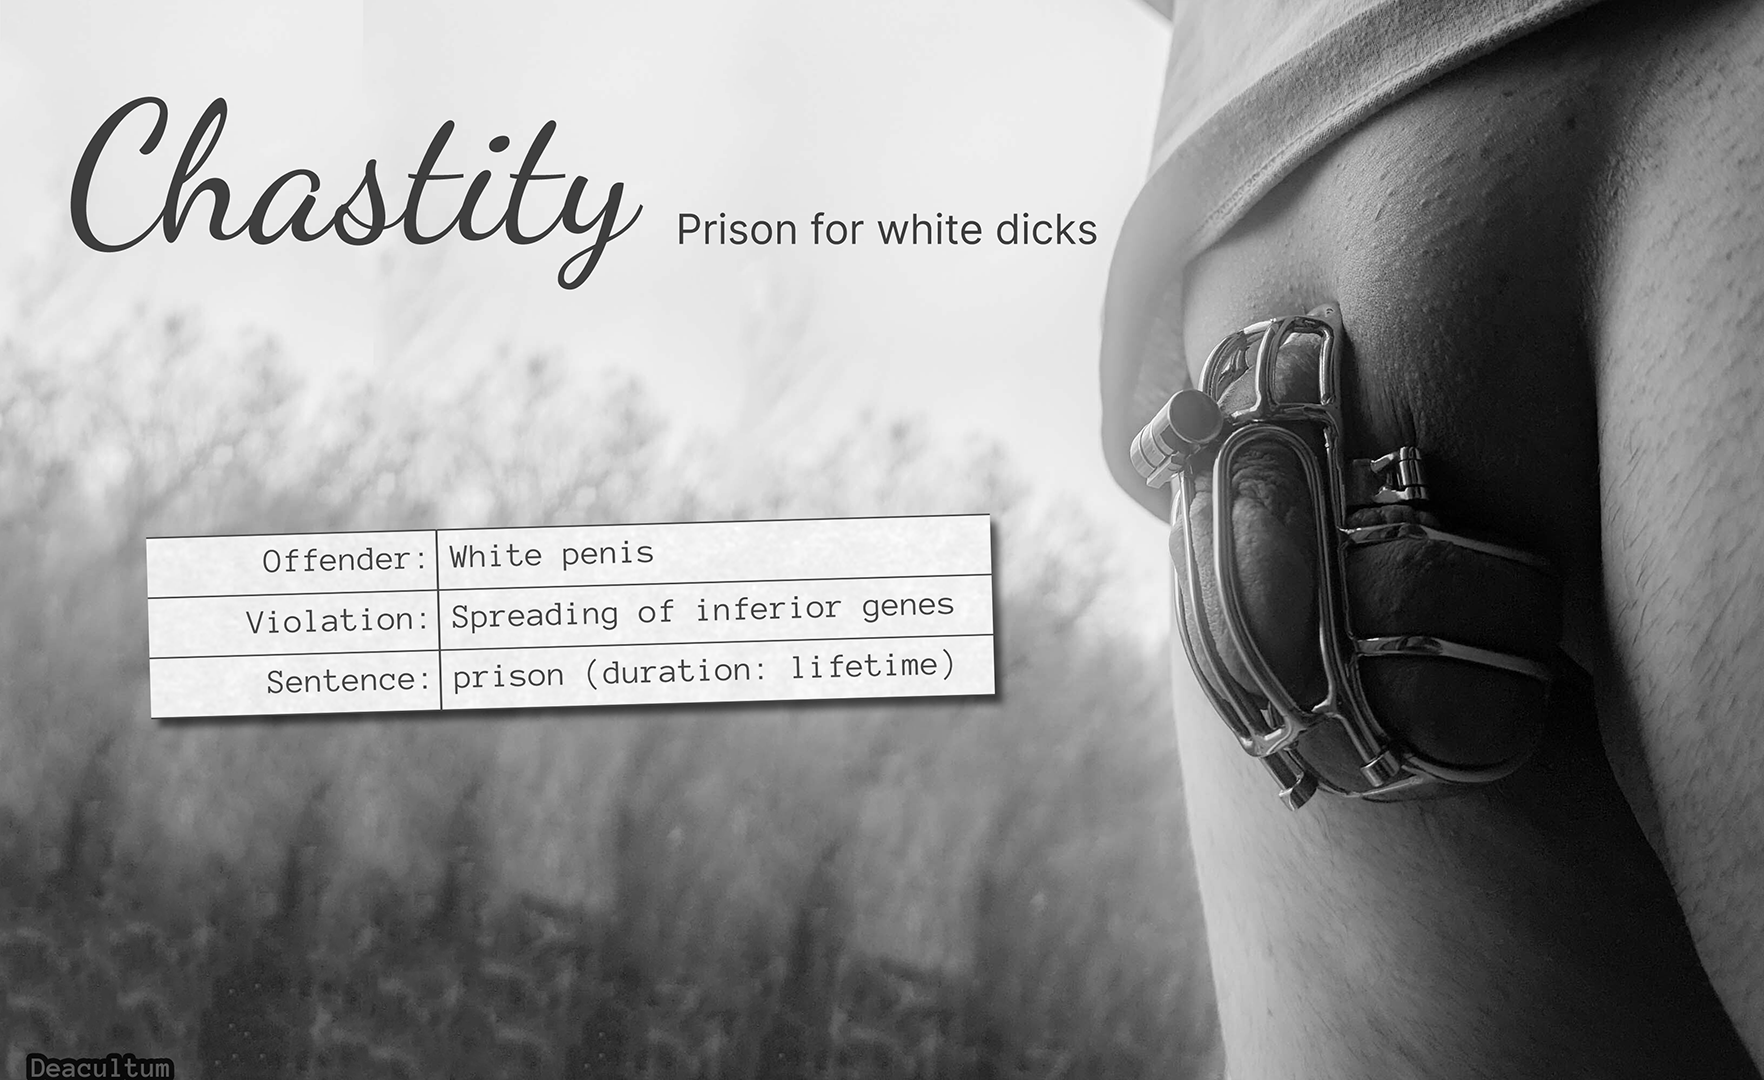 Prison for White Dicks